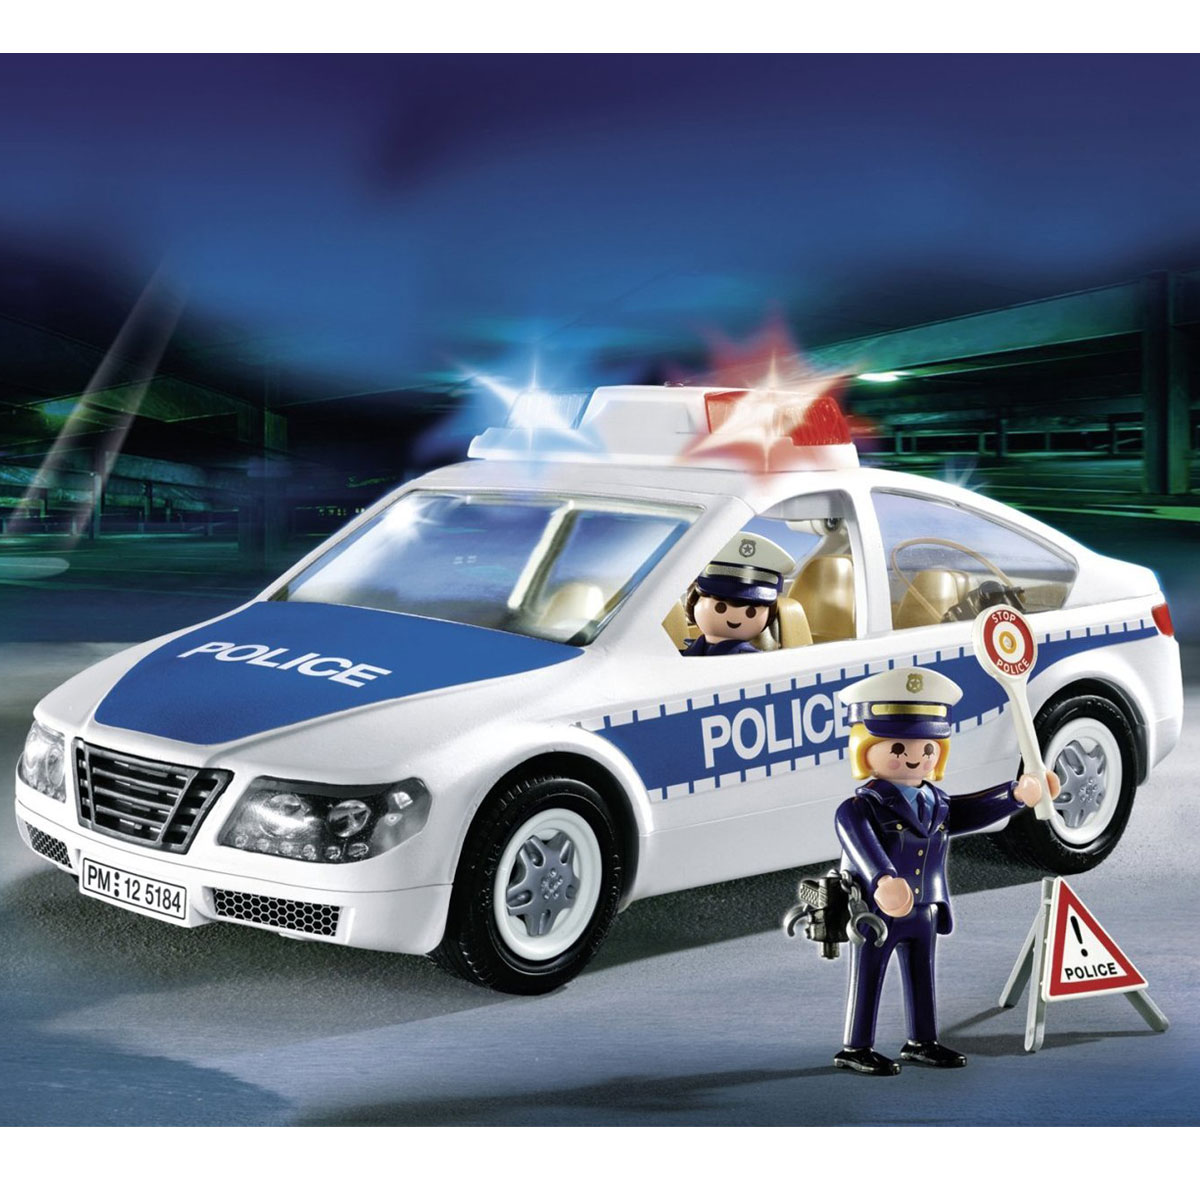 ماشین پلیس با نور چشمک زن مدل 5184 پلی موبیل